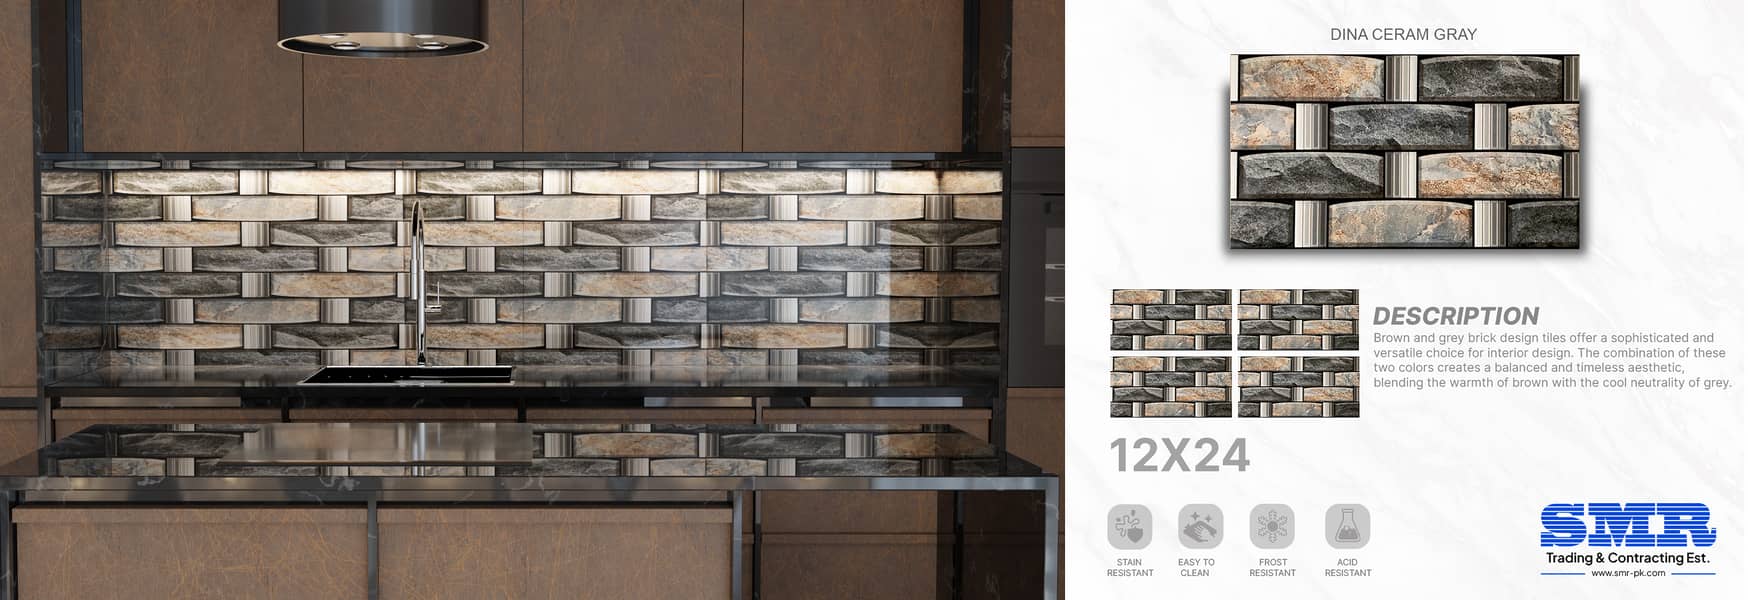 12x24 kitchen tiles 4